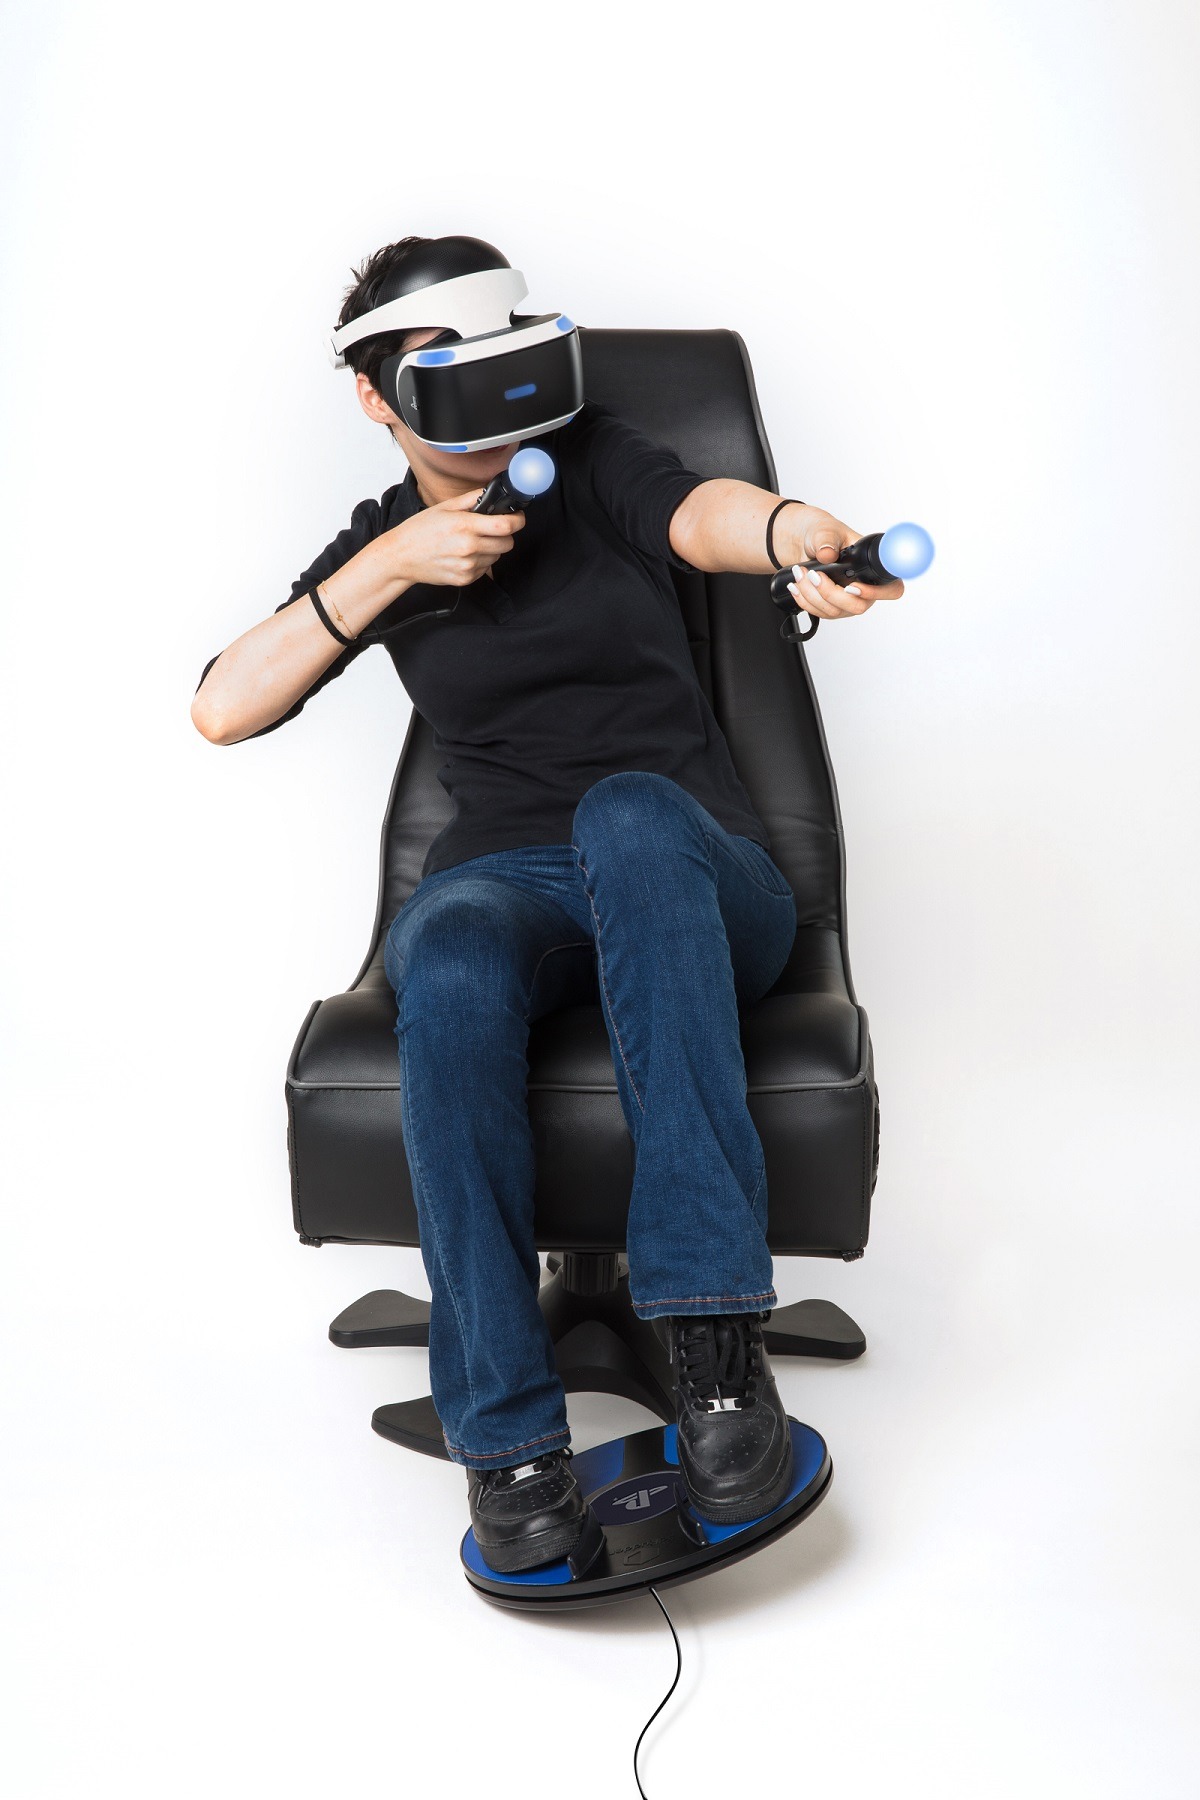 Бесплатные vr игры с джойстиком. 3drudder foot Motion Controller для PLAYSTATION VR. Sony PLAYSTATION 4 VR + Controller. VR шлем для ps3. PLAYSTATION VR 3.